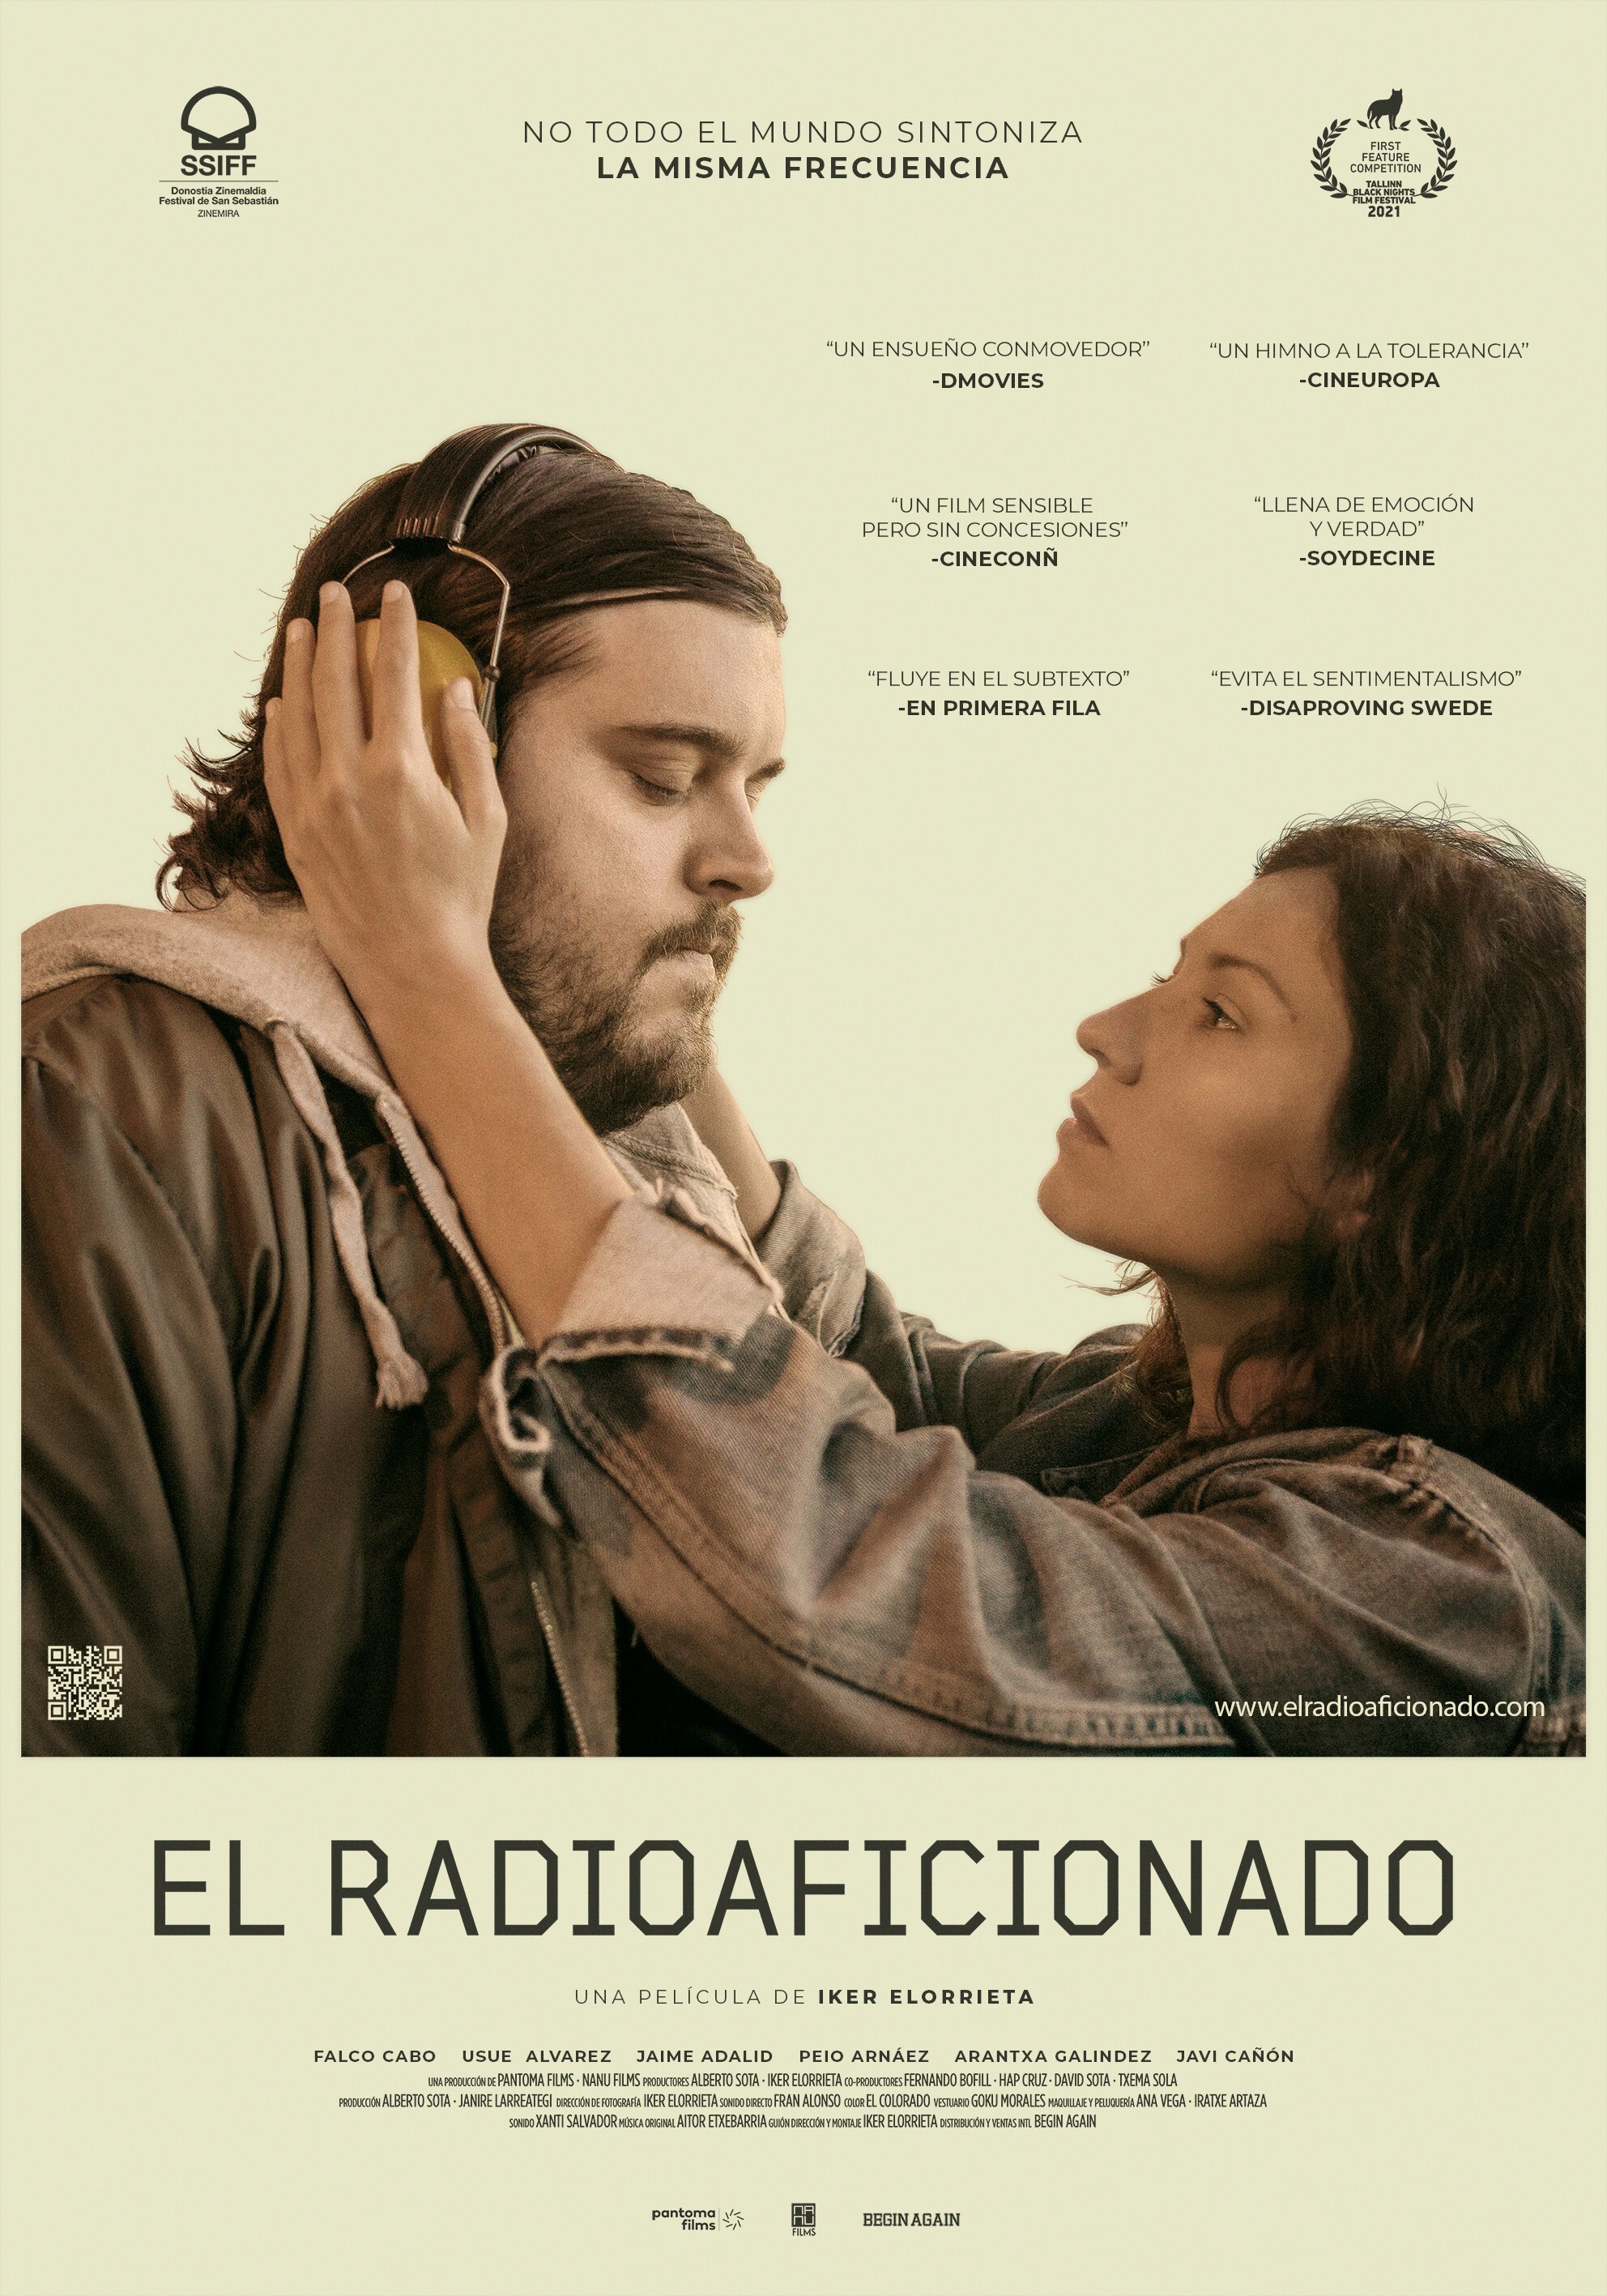 'El radioaficionado', de Iker Elorrieta, se estrena en cines el 2 de septiembre